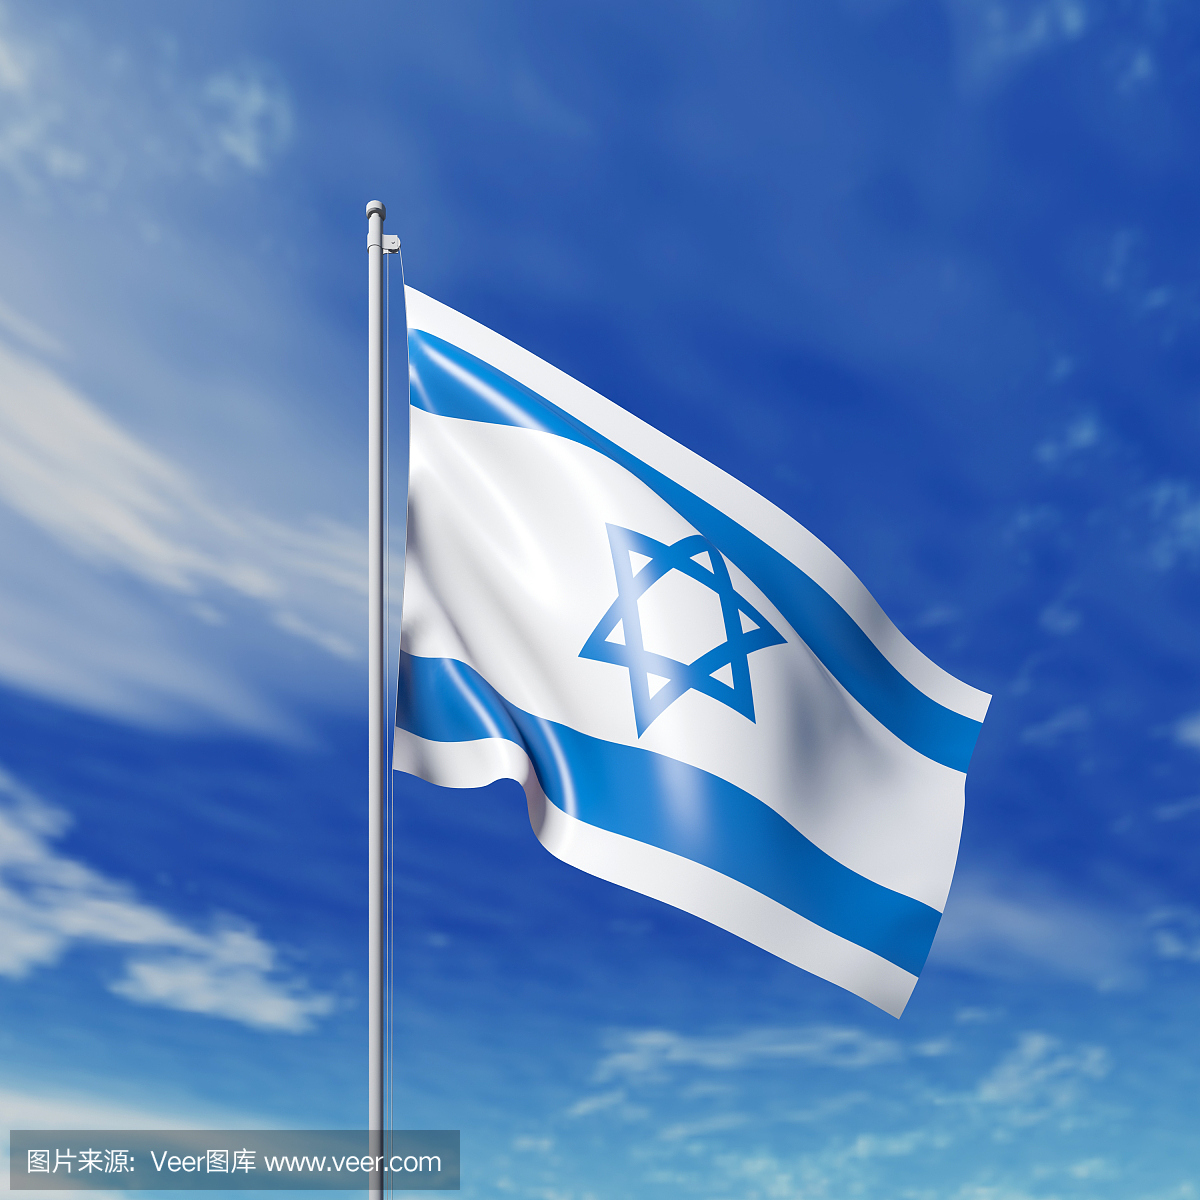 圣地之旅—以色列 - 以色列游记攻略【携程攻略】